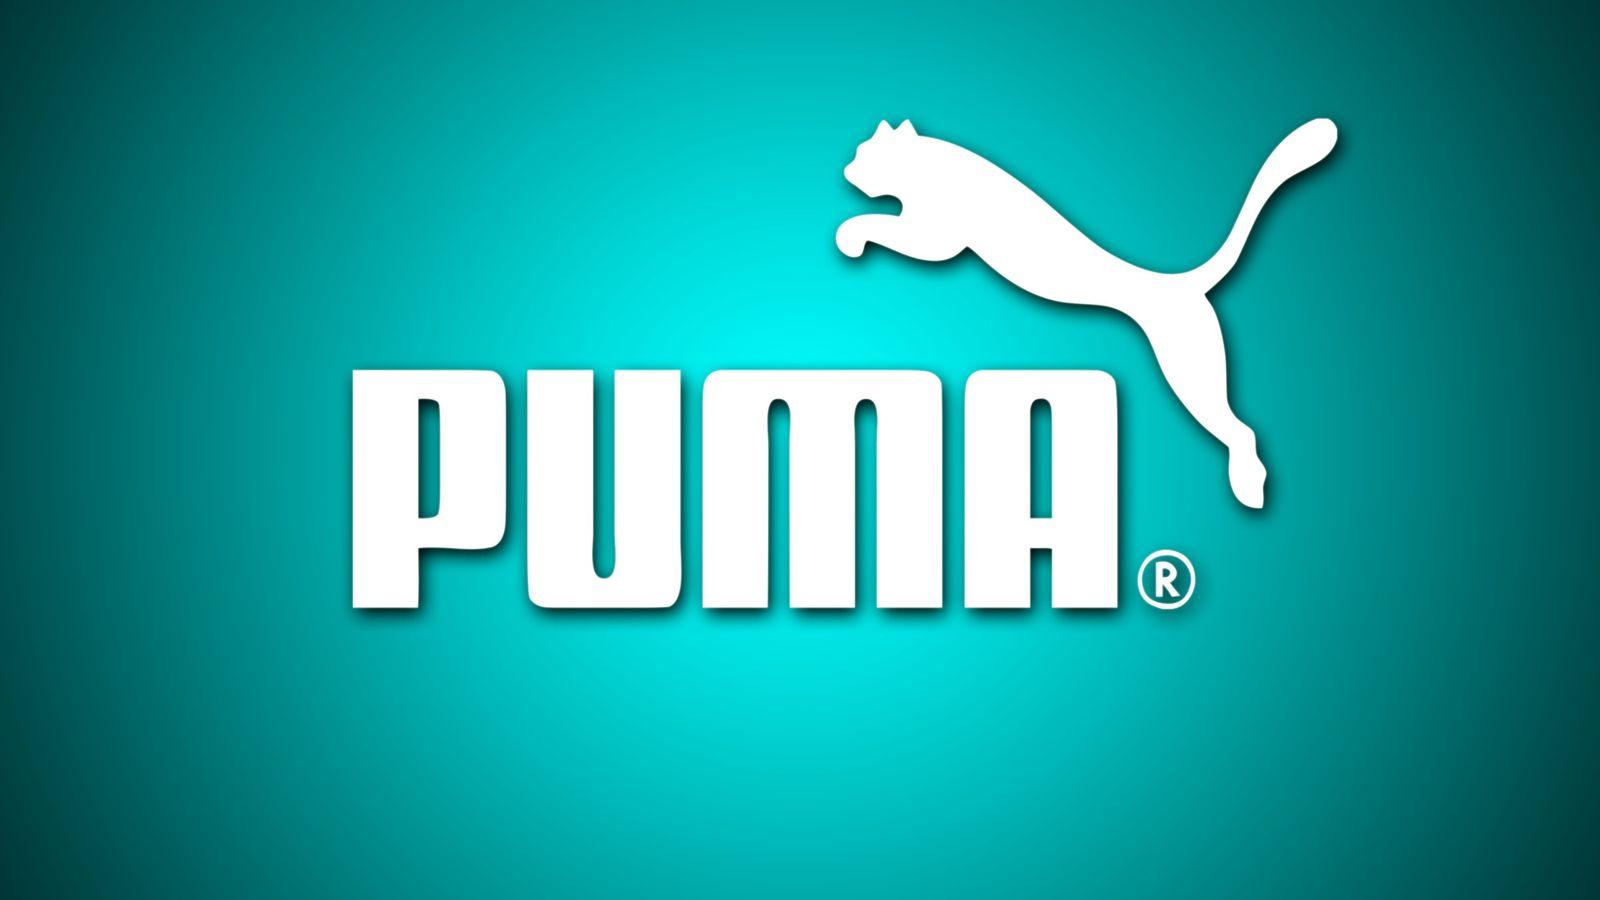 puma logo wallpapers top free puma logo backgrounds wallpaperaccess puma logo wallpapers top free puma